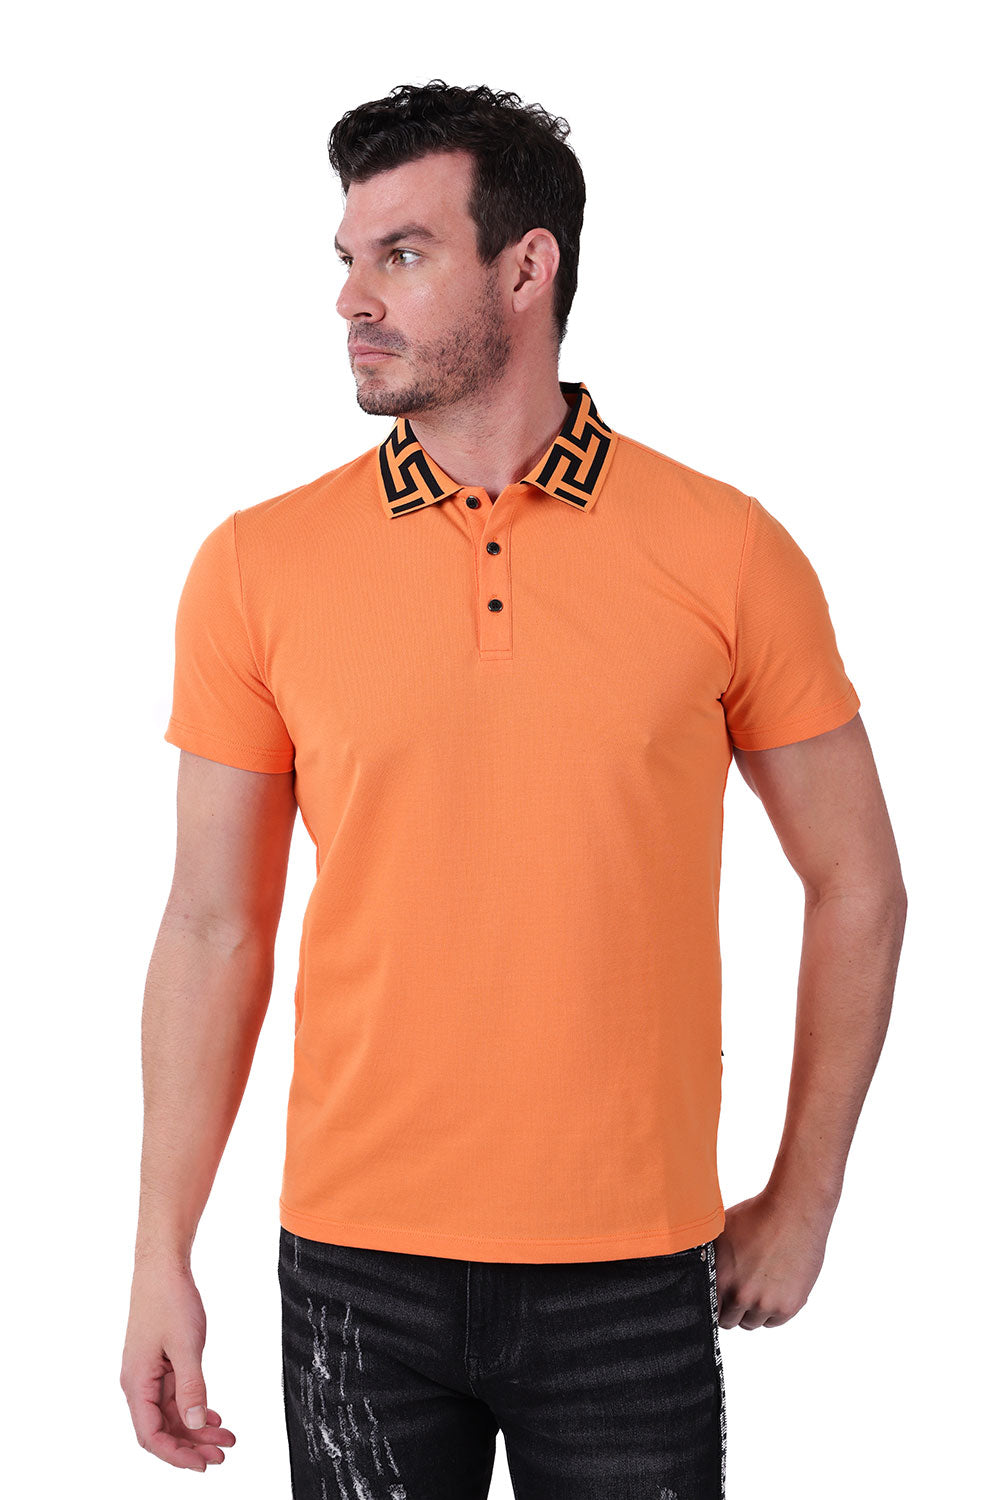 Barabas Men's Greek Key Printed Pattern Designer Polo Shirts PS121 Orange